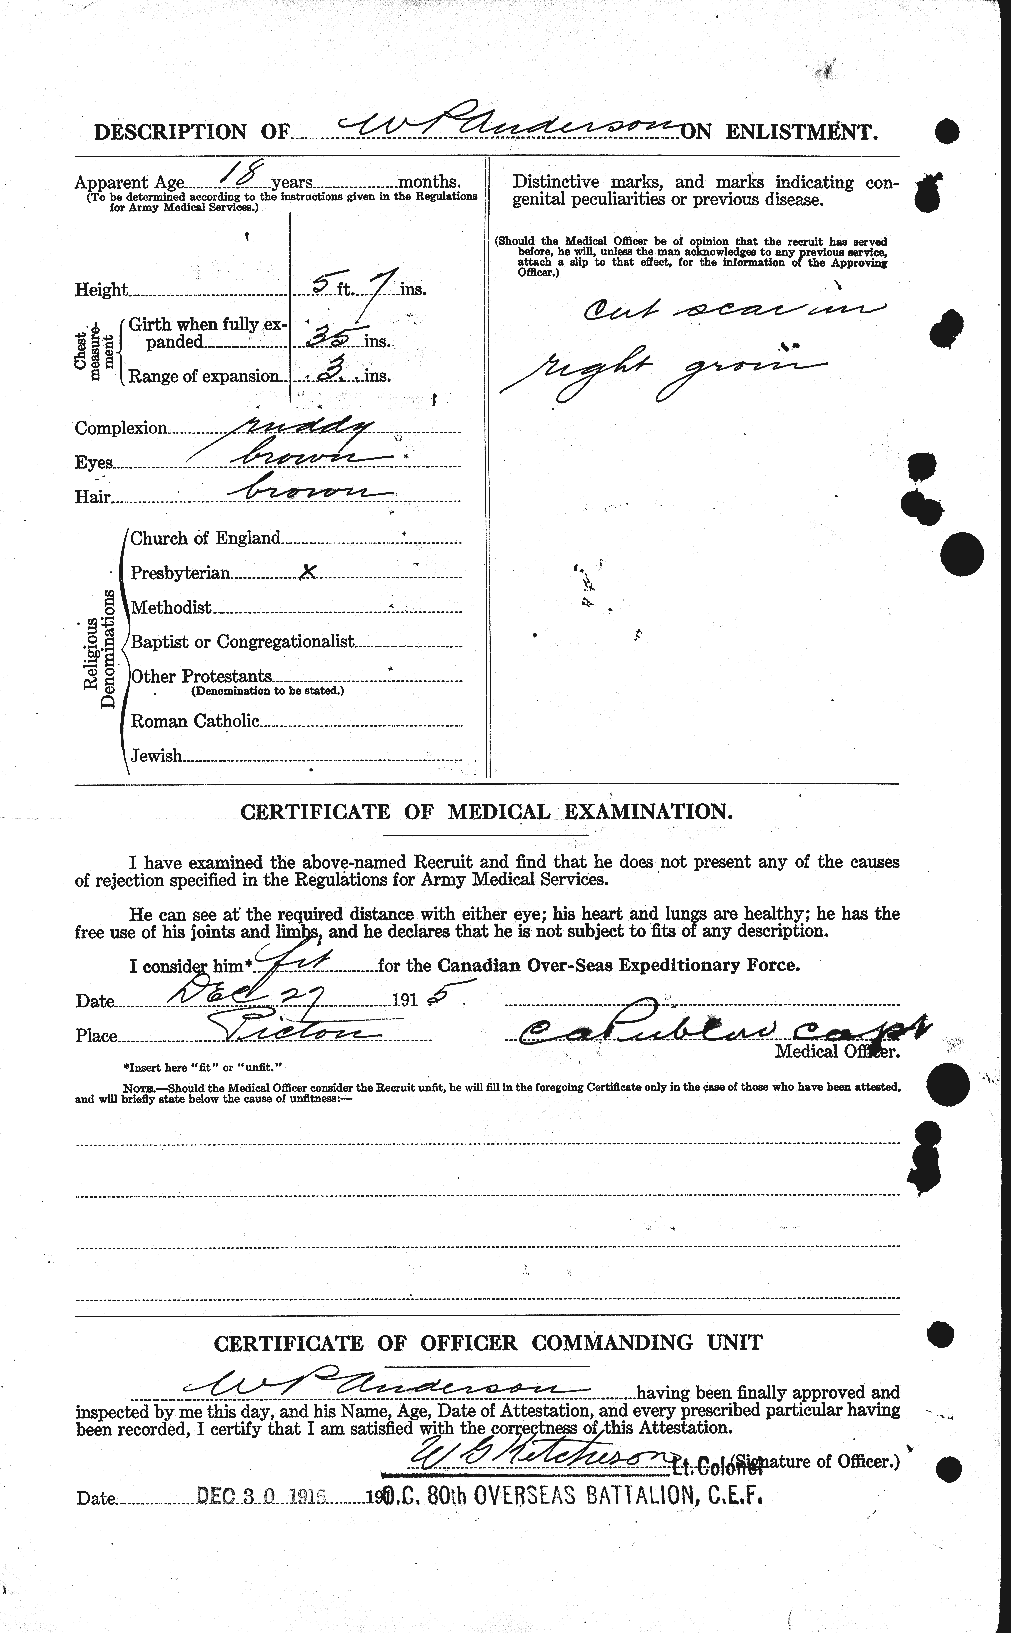 Dossiers du Personnel de la Première Guerre mondiale - CEC 210678b